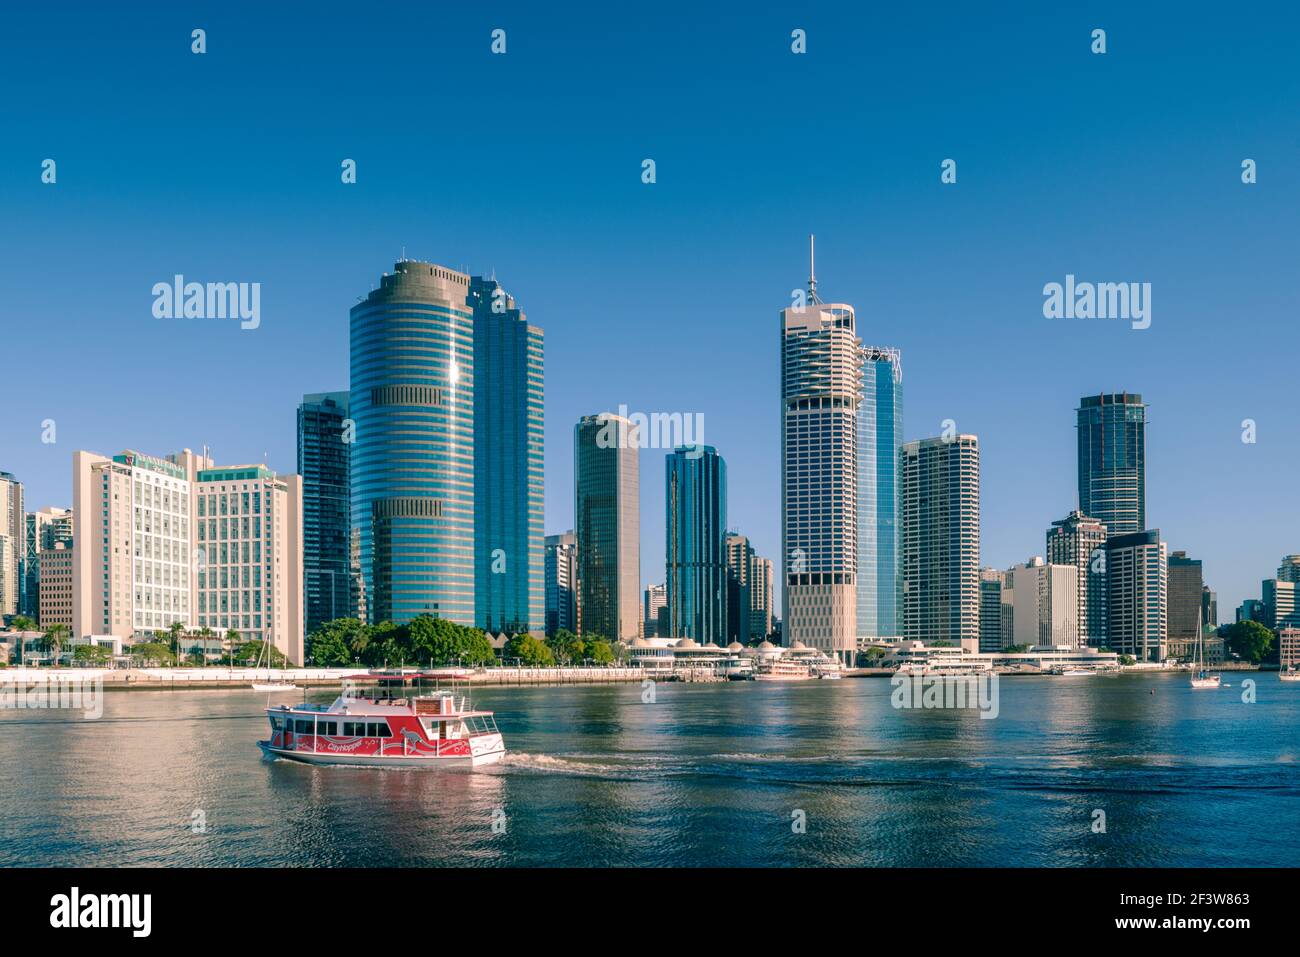 Vista mattutina degli edifici della citta' di Brisbane, situati nell'area conosciuta come Waterfront Place. Brisbane è la capitale dello stato del Queensland, Australia. Foto Stock